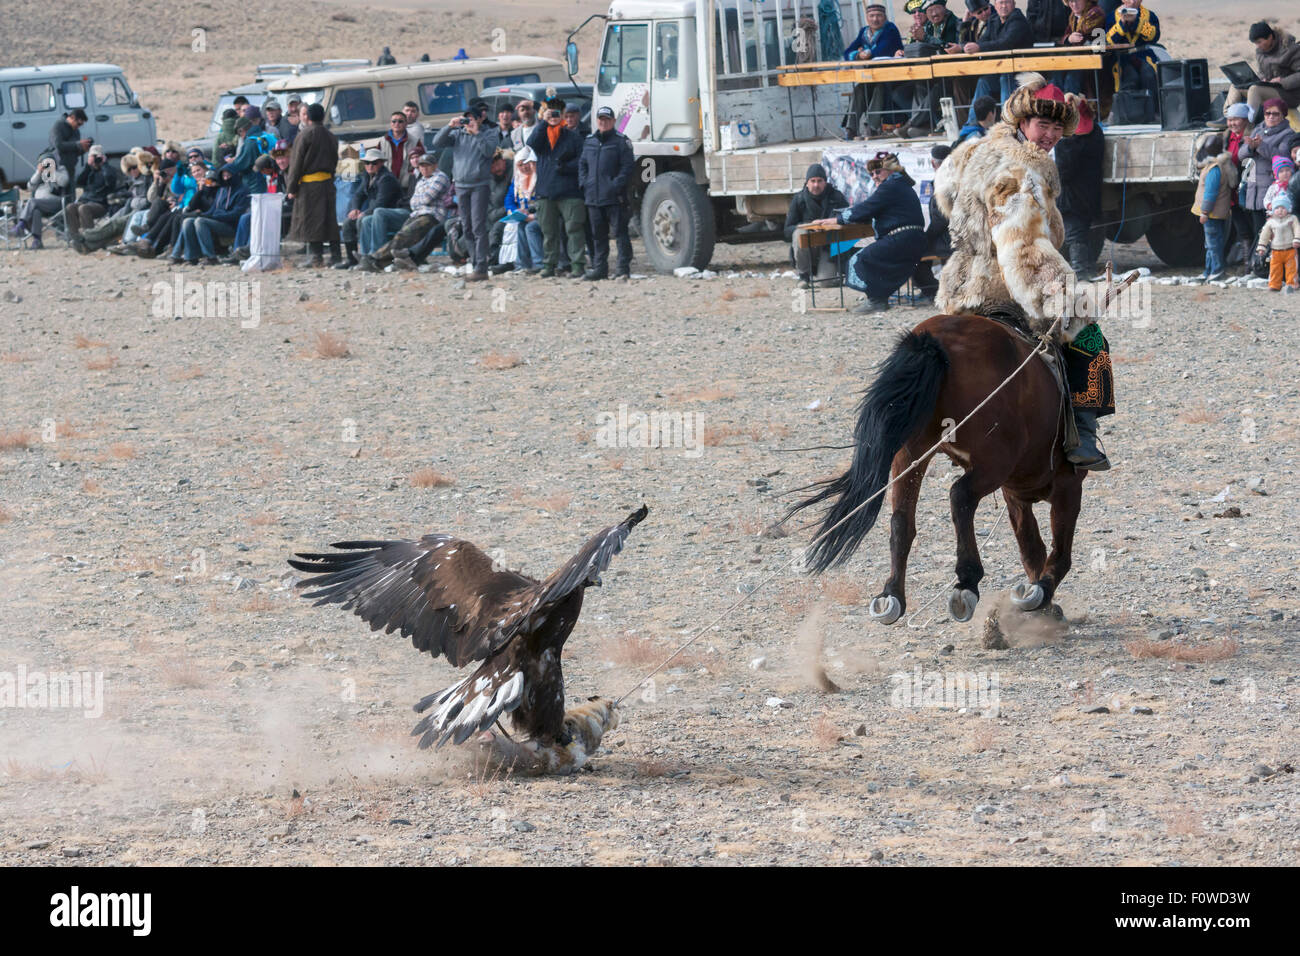 Kazakh eagle hunter luring his eagle near the judge's stand, Eagle Festival, Olgii, Western Mongolia Stock Photo